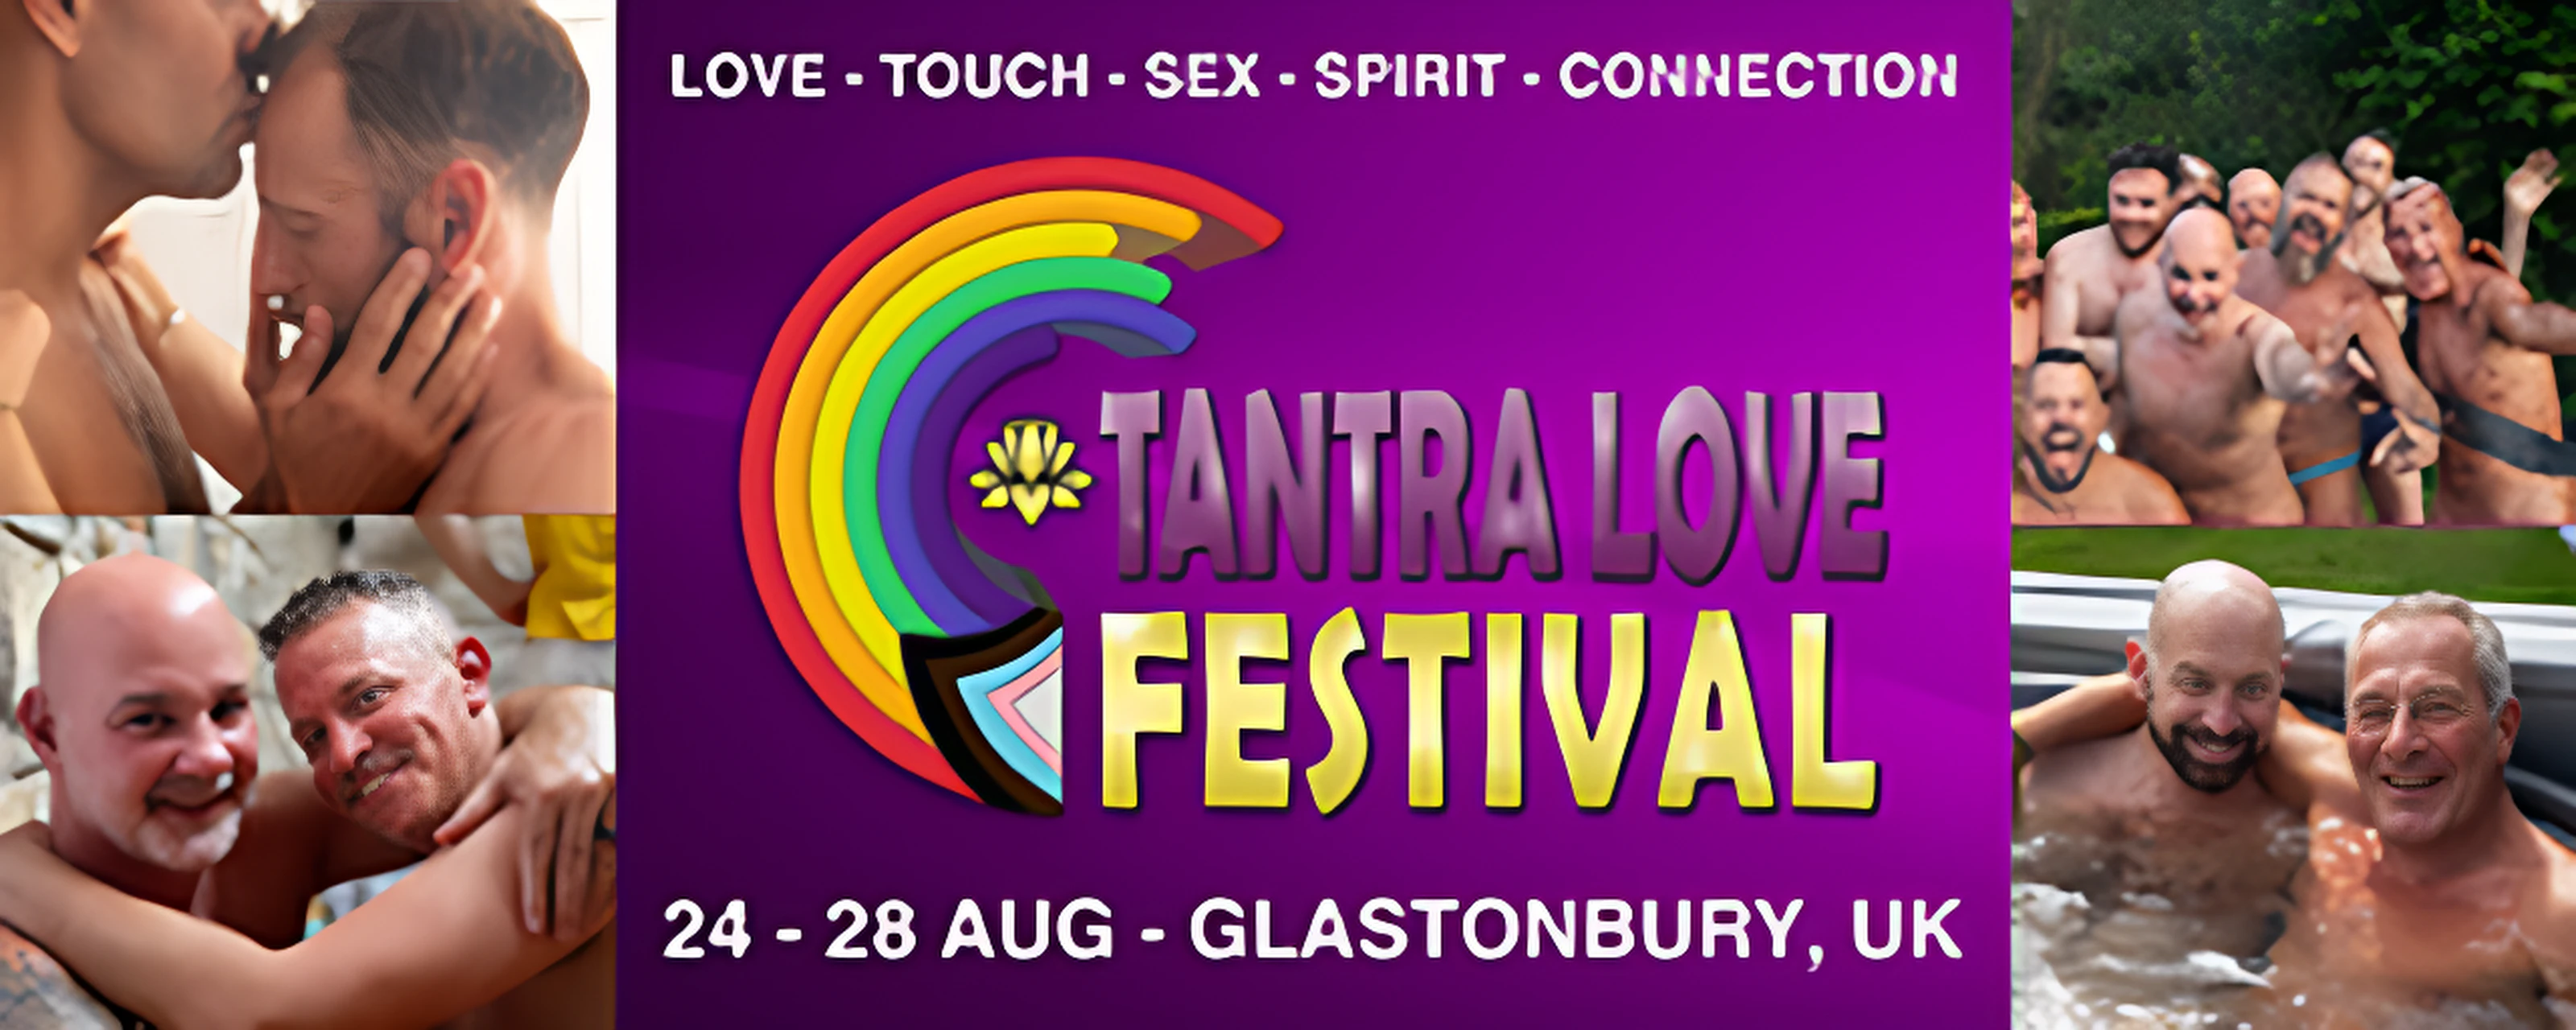 Tantra Love Festival